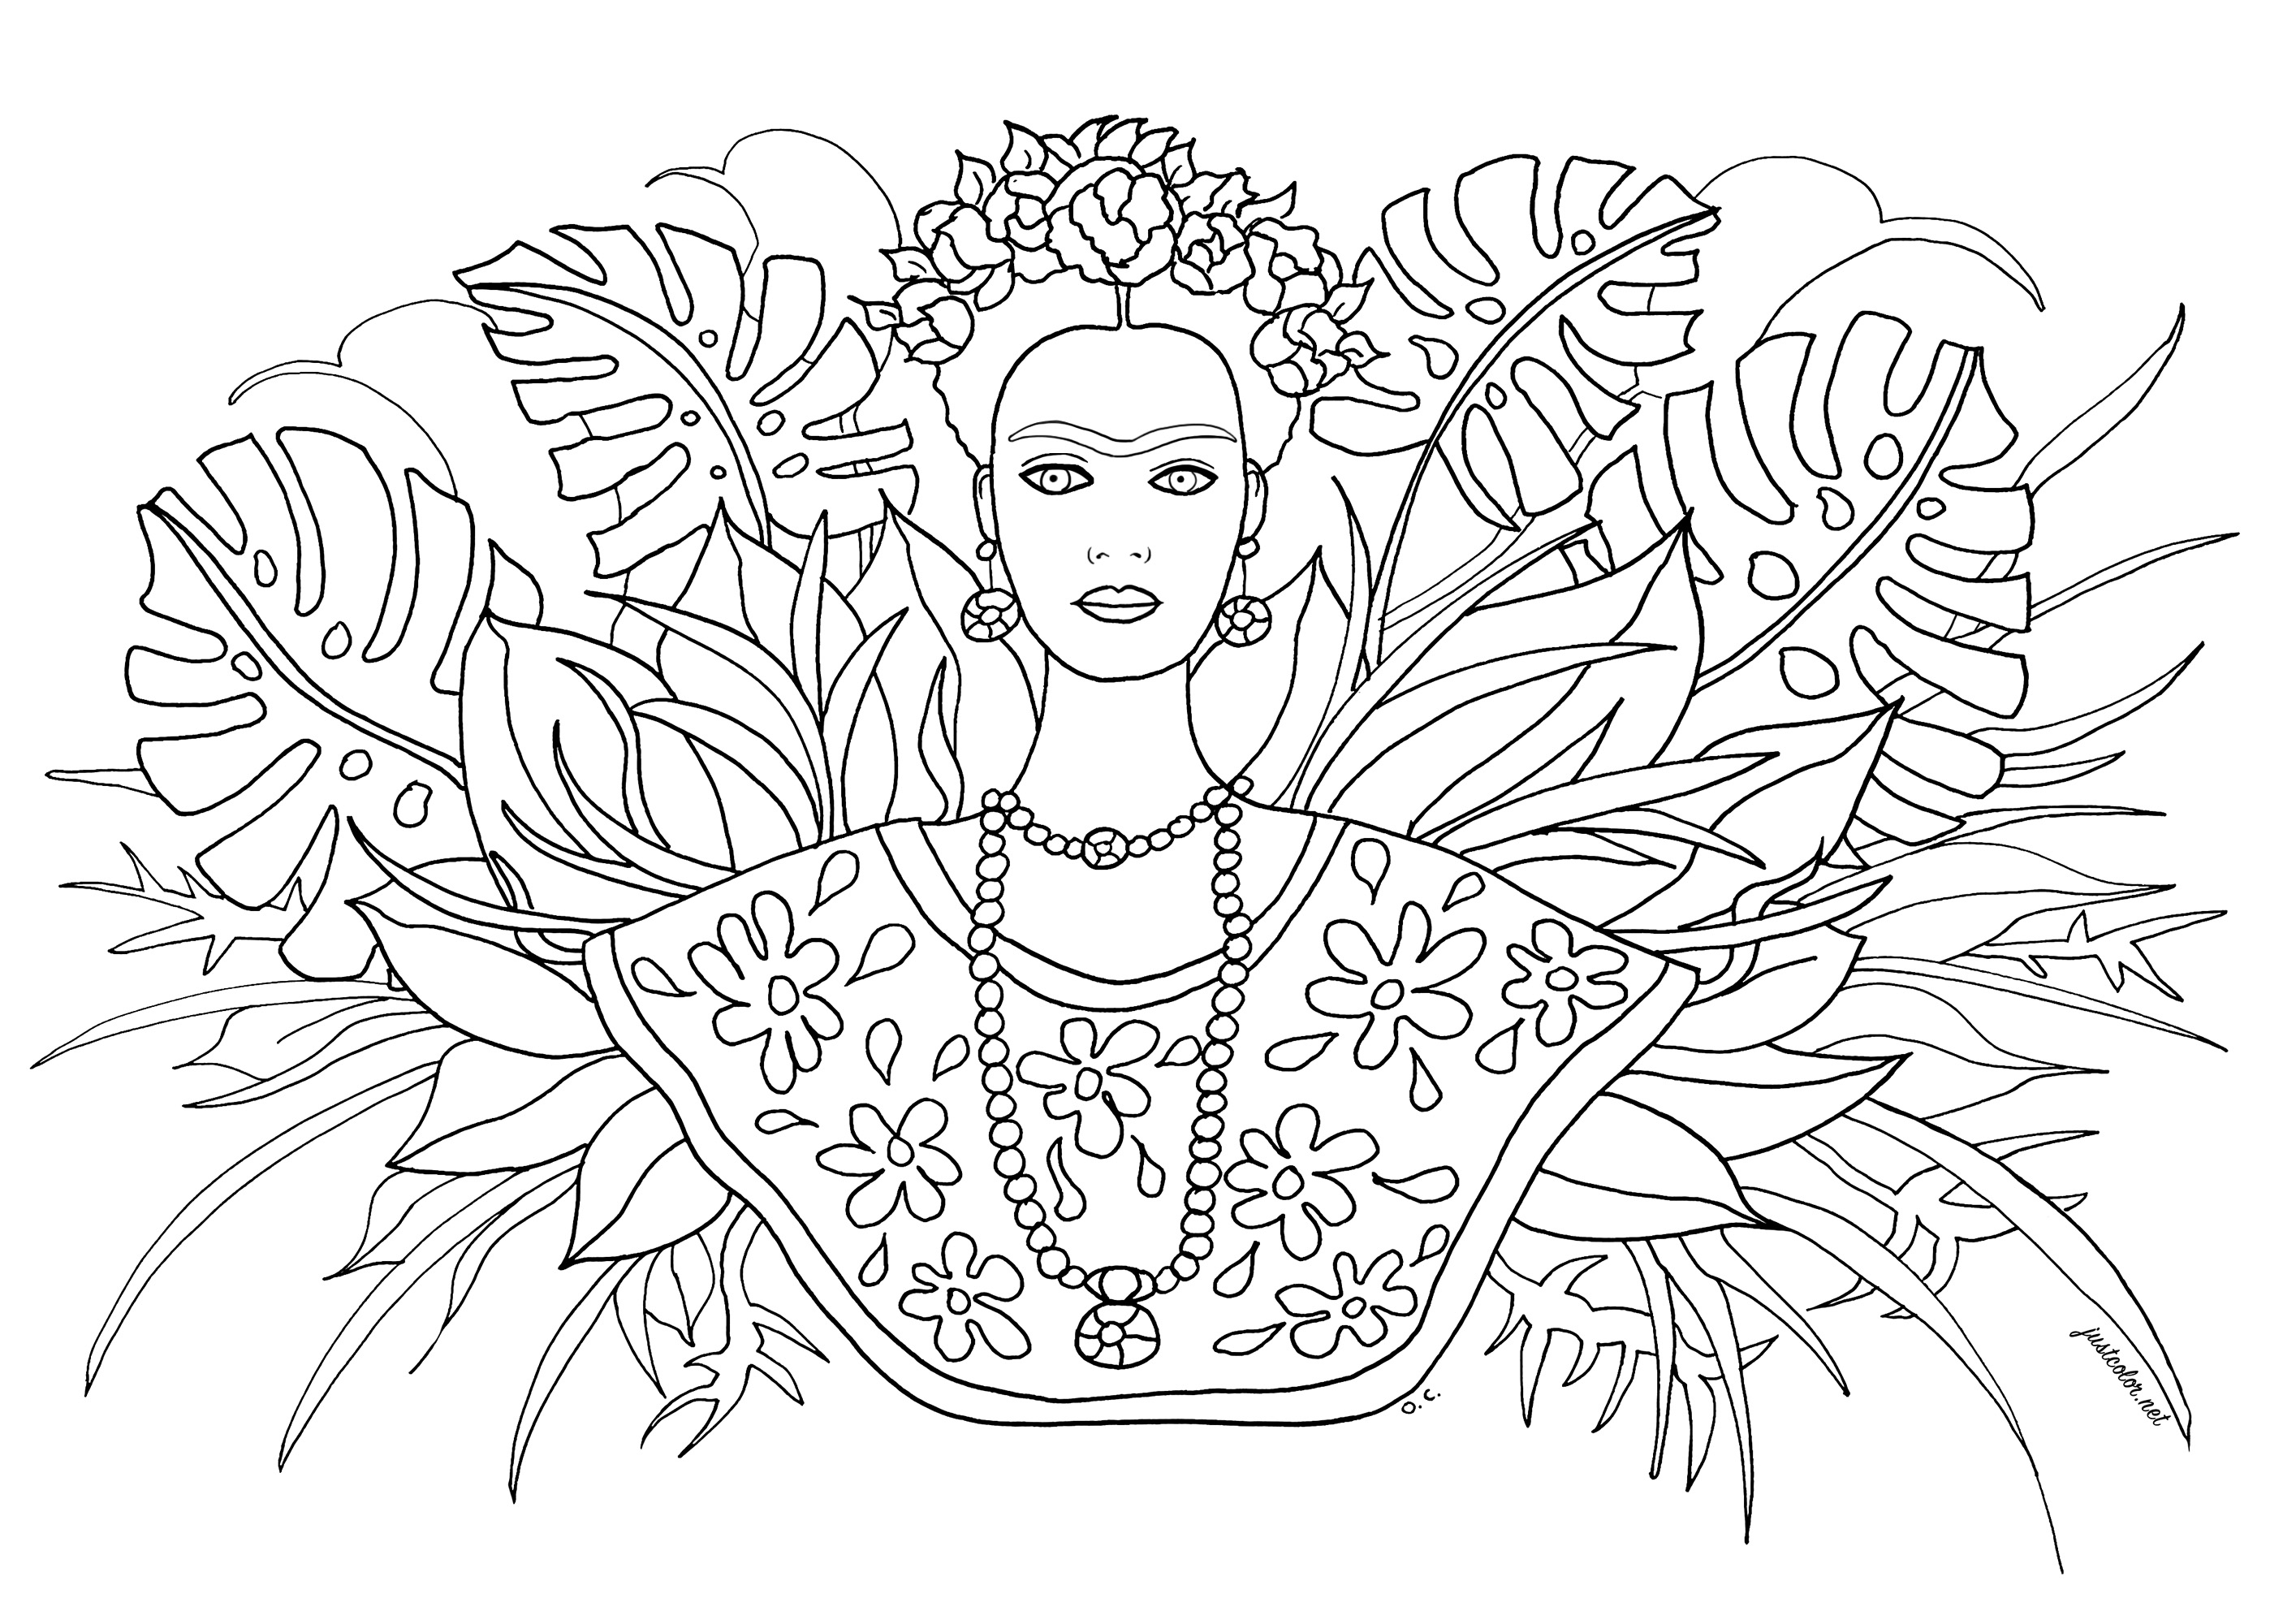 La pintora mexicana Frida Kahlo y varios tipos de hojas al fondo. ¿Lo sabía? A lo largo de su carrera, Frida Kahlo pintó 143 cuadros, 55 de ellos autorretratos. Kahlo declaró: 'Me pinto a mí misma porque a menudo estoy sola y porque soy el tema que mejor conozco'. Sus autorretratos suelen incluir interpretaciones de heridas físicas y psicológicas.